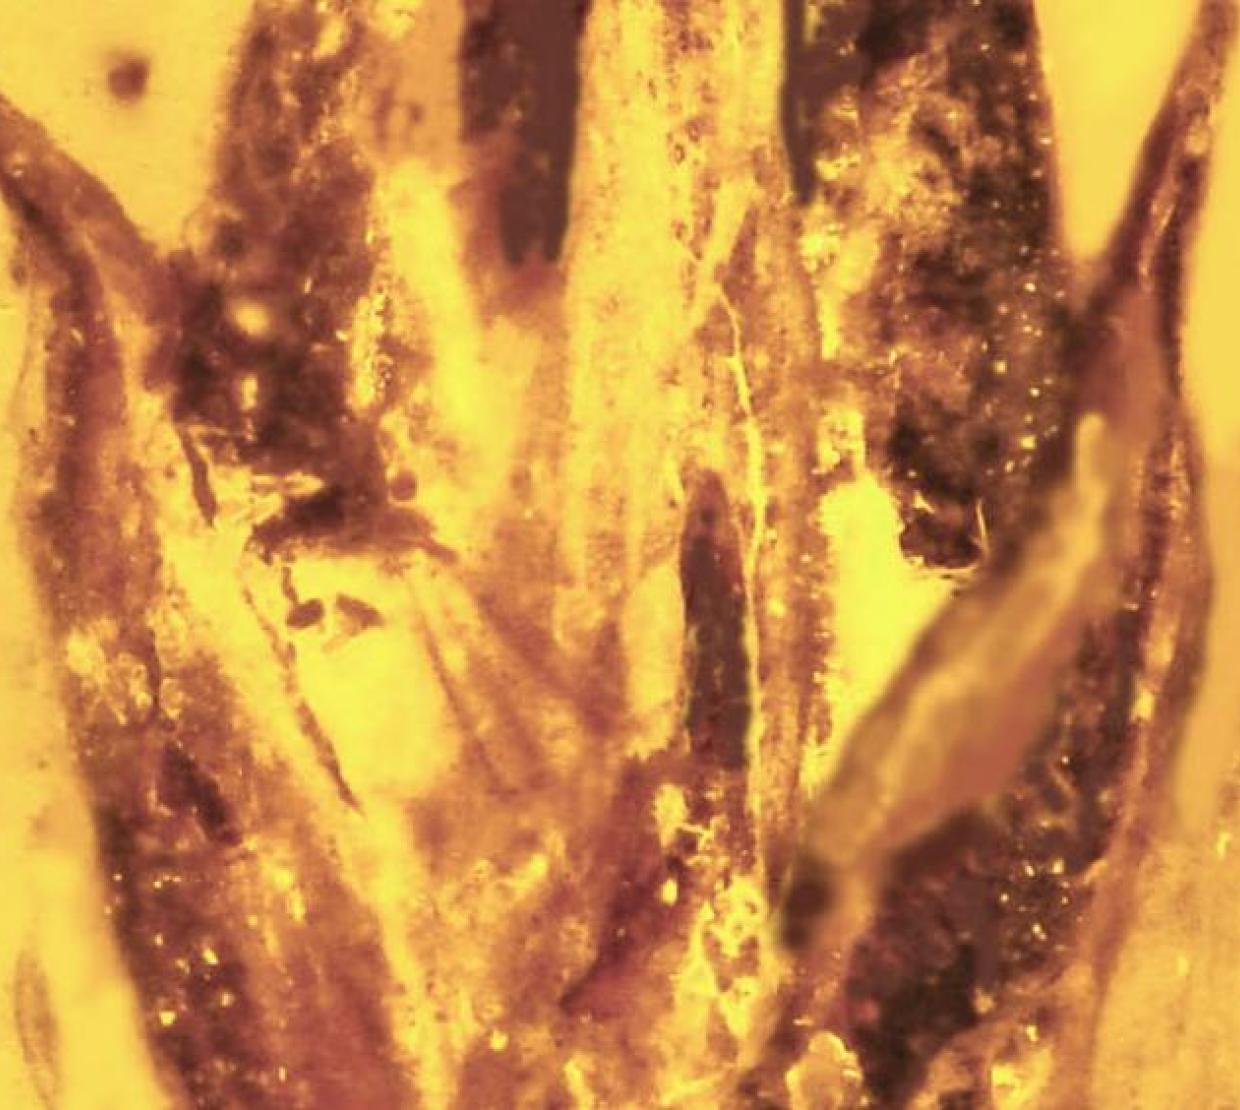 Ergot Parasite encased in amber.